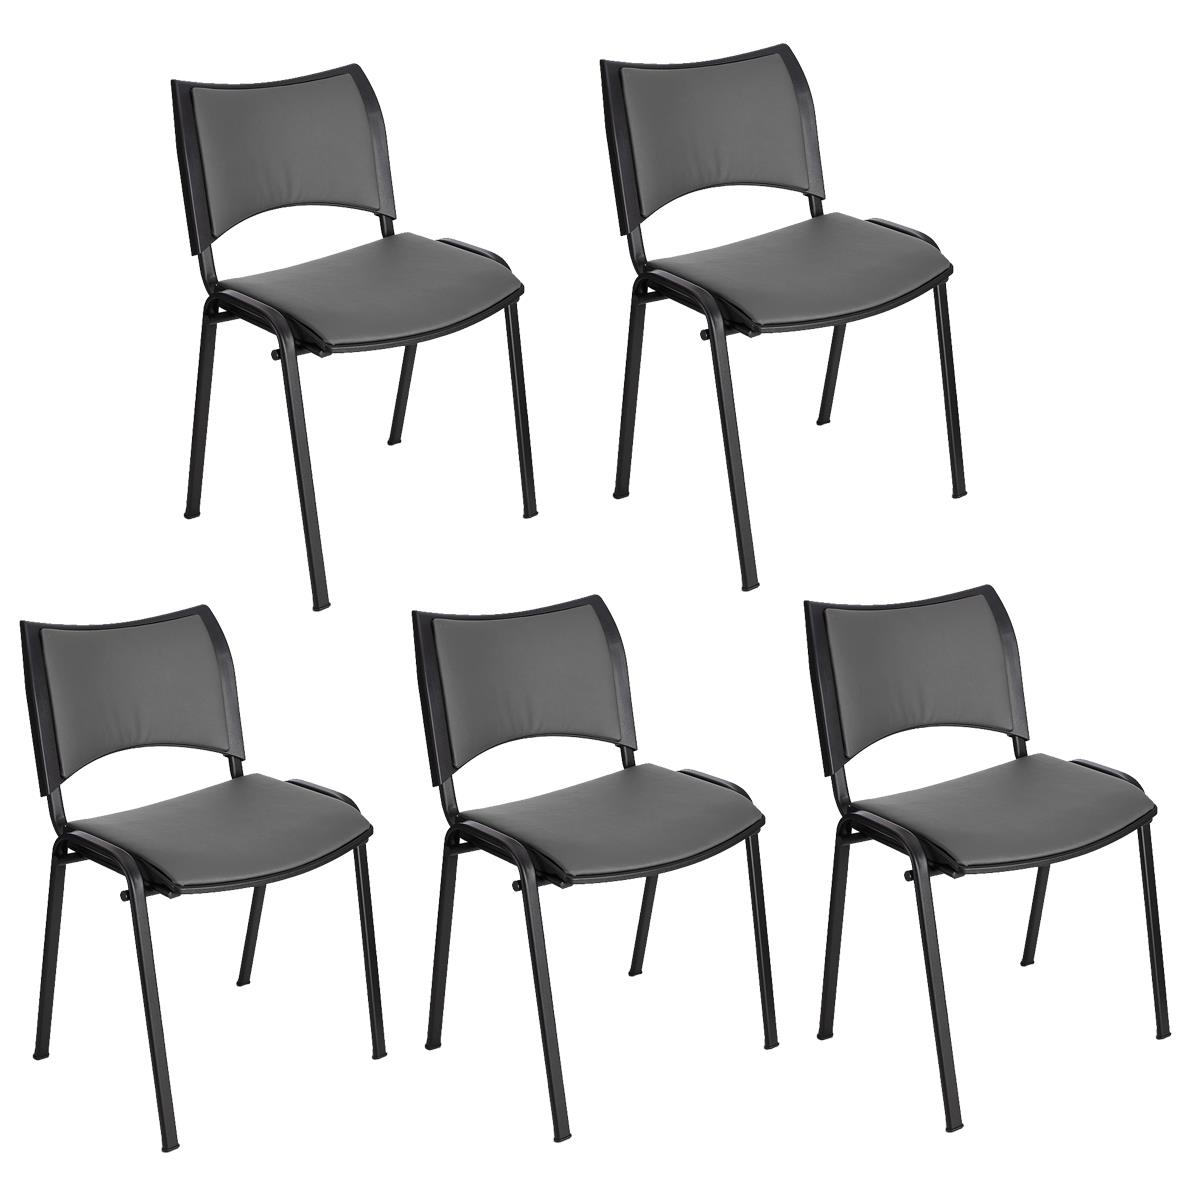 Lote 5 Cadeiras de Visita ROMEL PELE, Prática e Empilhável, Pernas Pretas, Cinzento